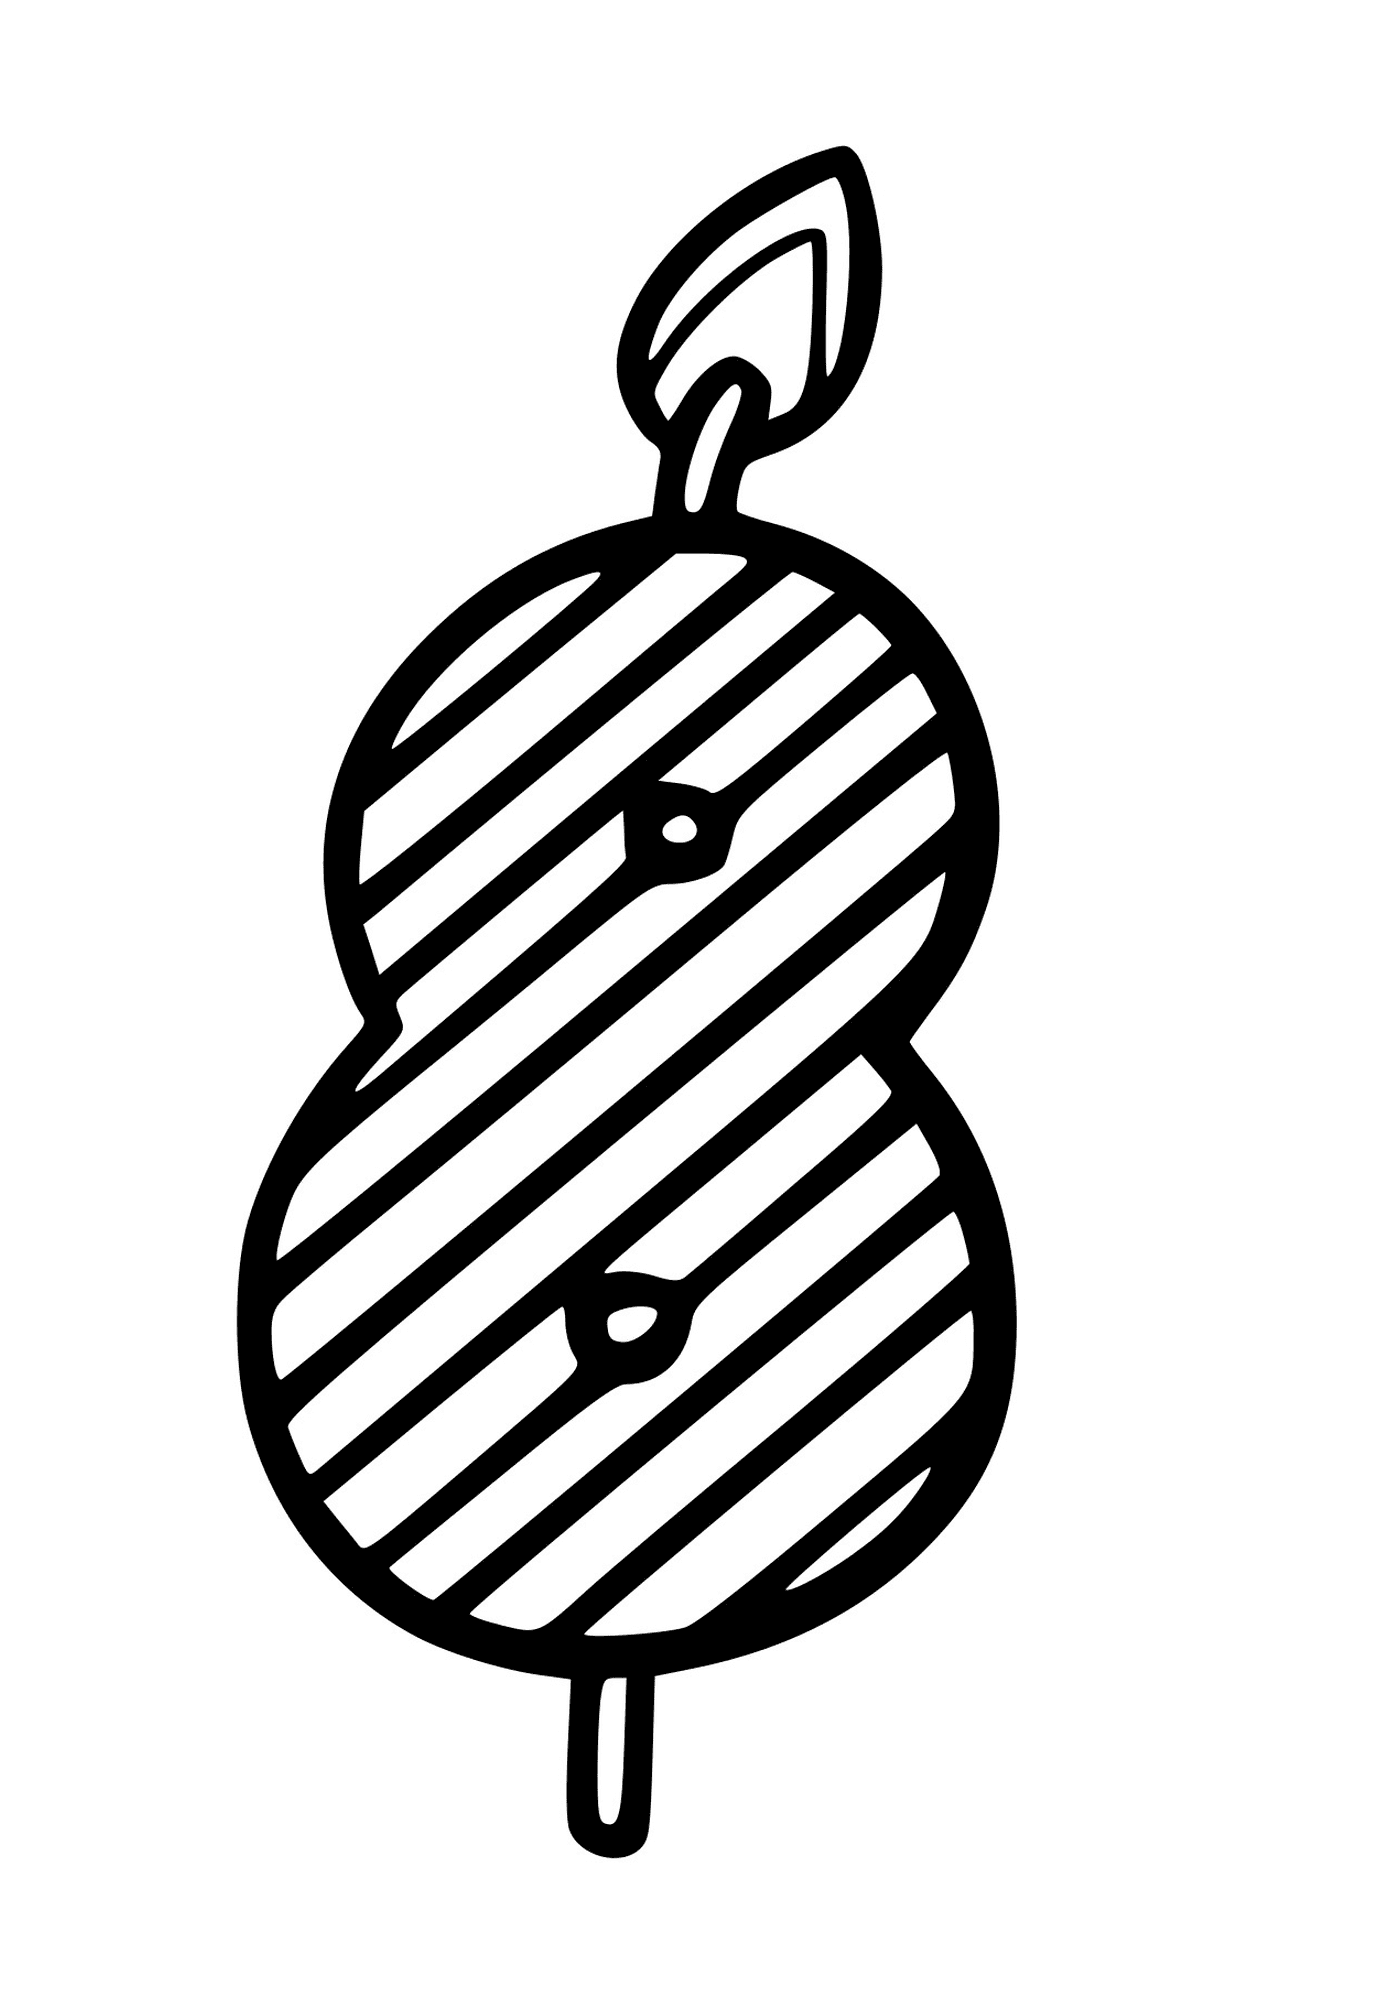  Una pera 